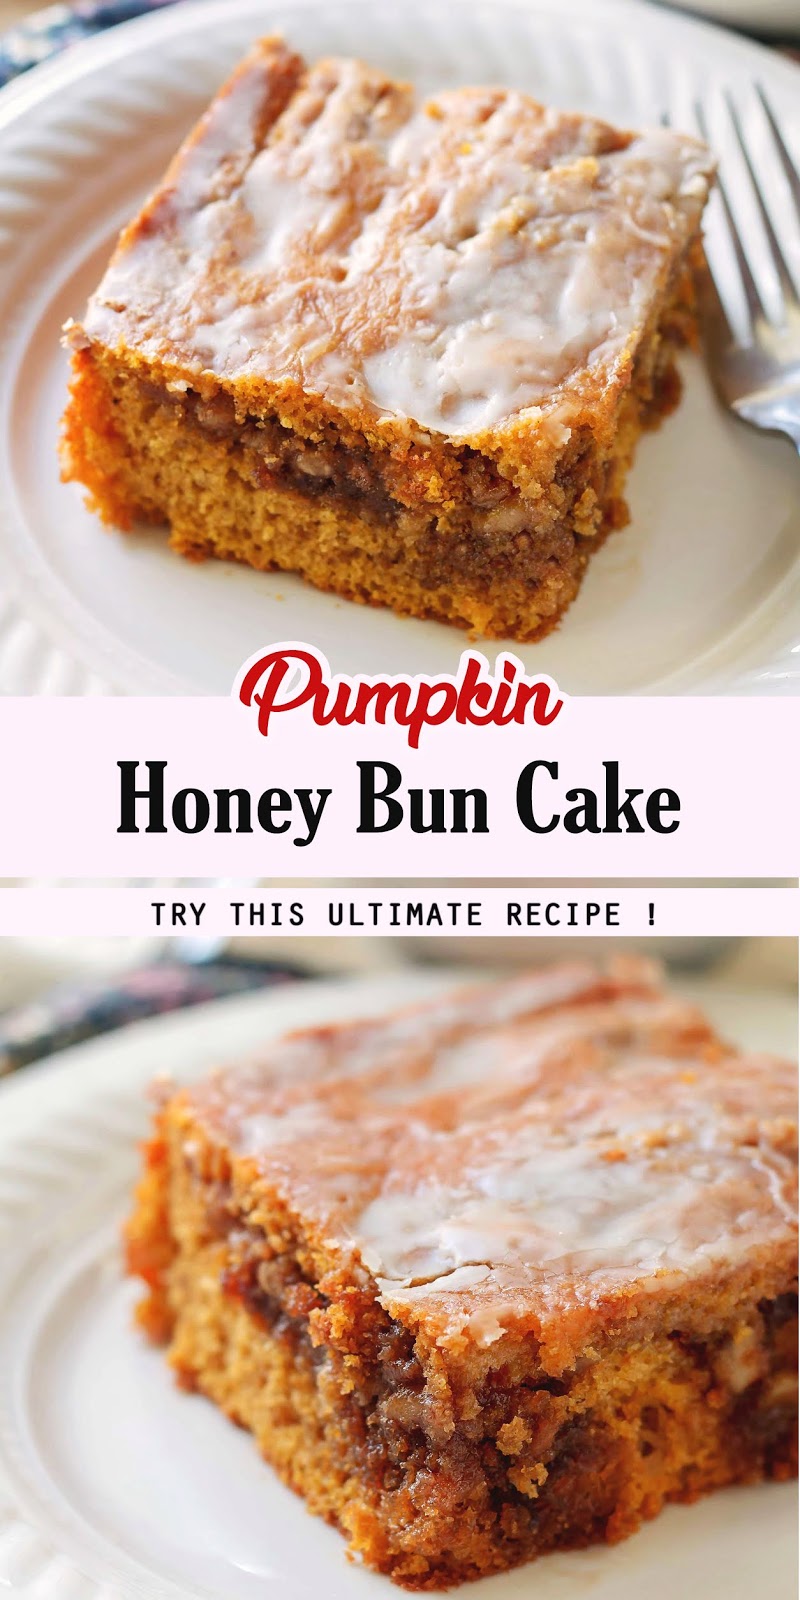 Pumpkin Honey Bun Cake - 3 SECONDS